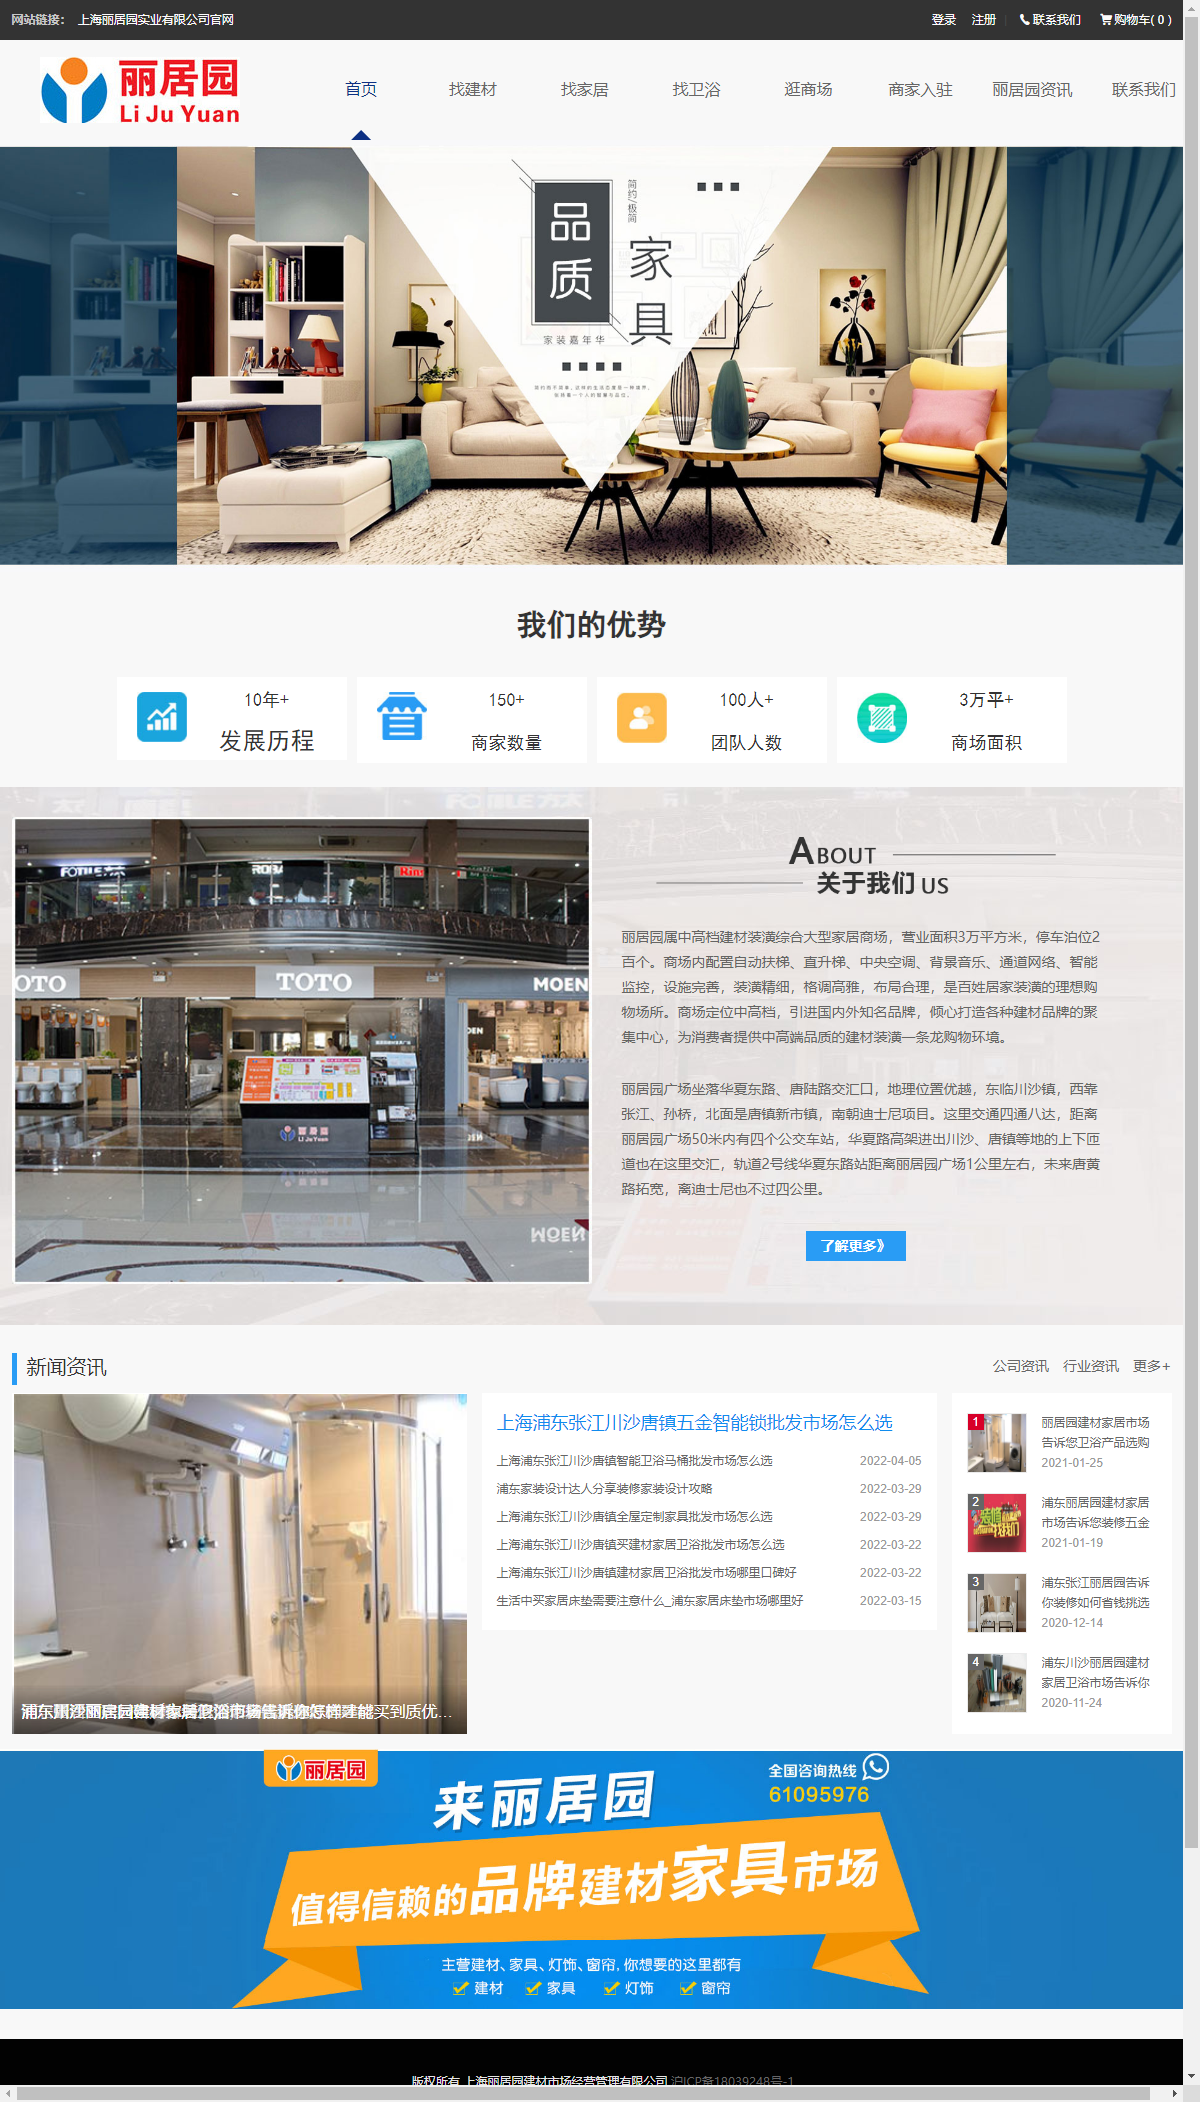 上海丽居园建材市场经营管理有限公司网站案例